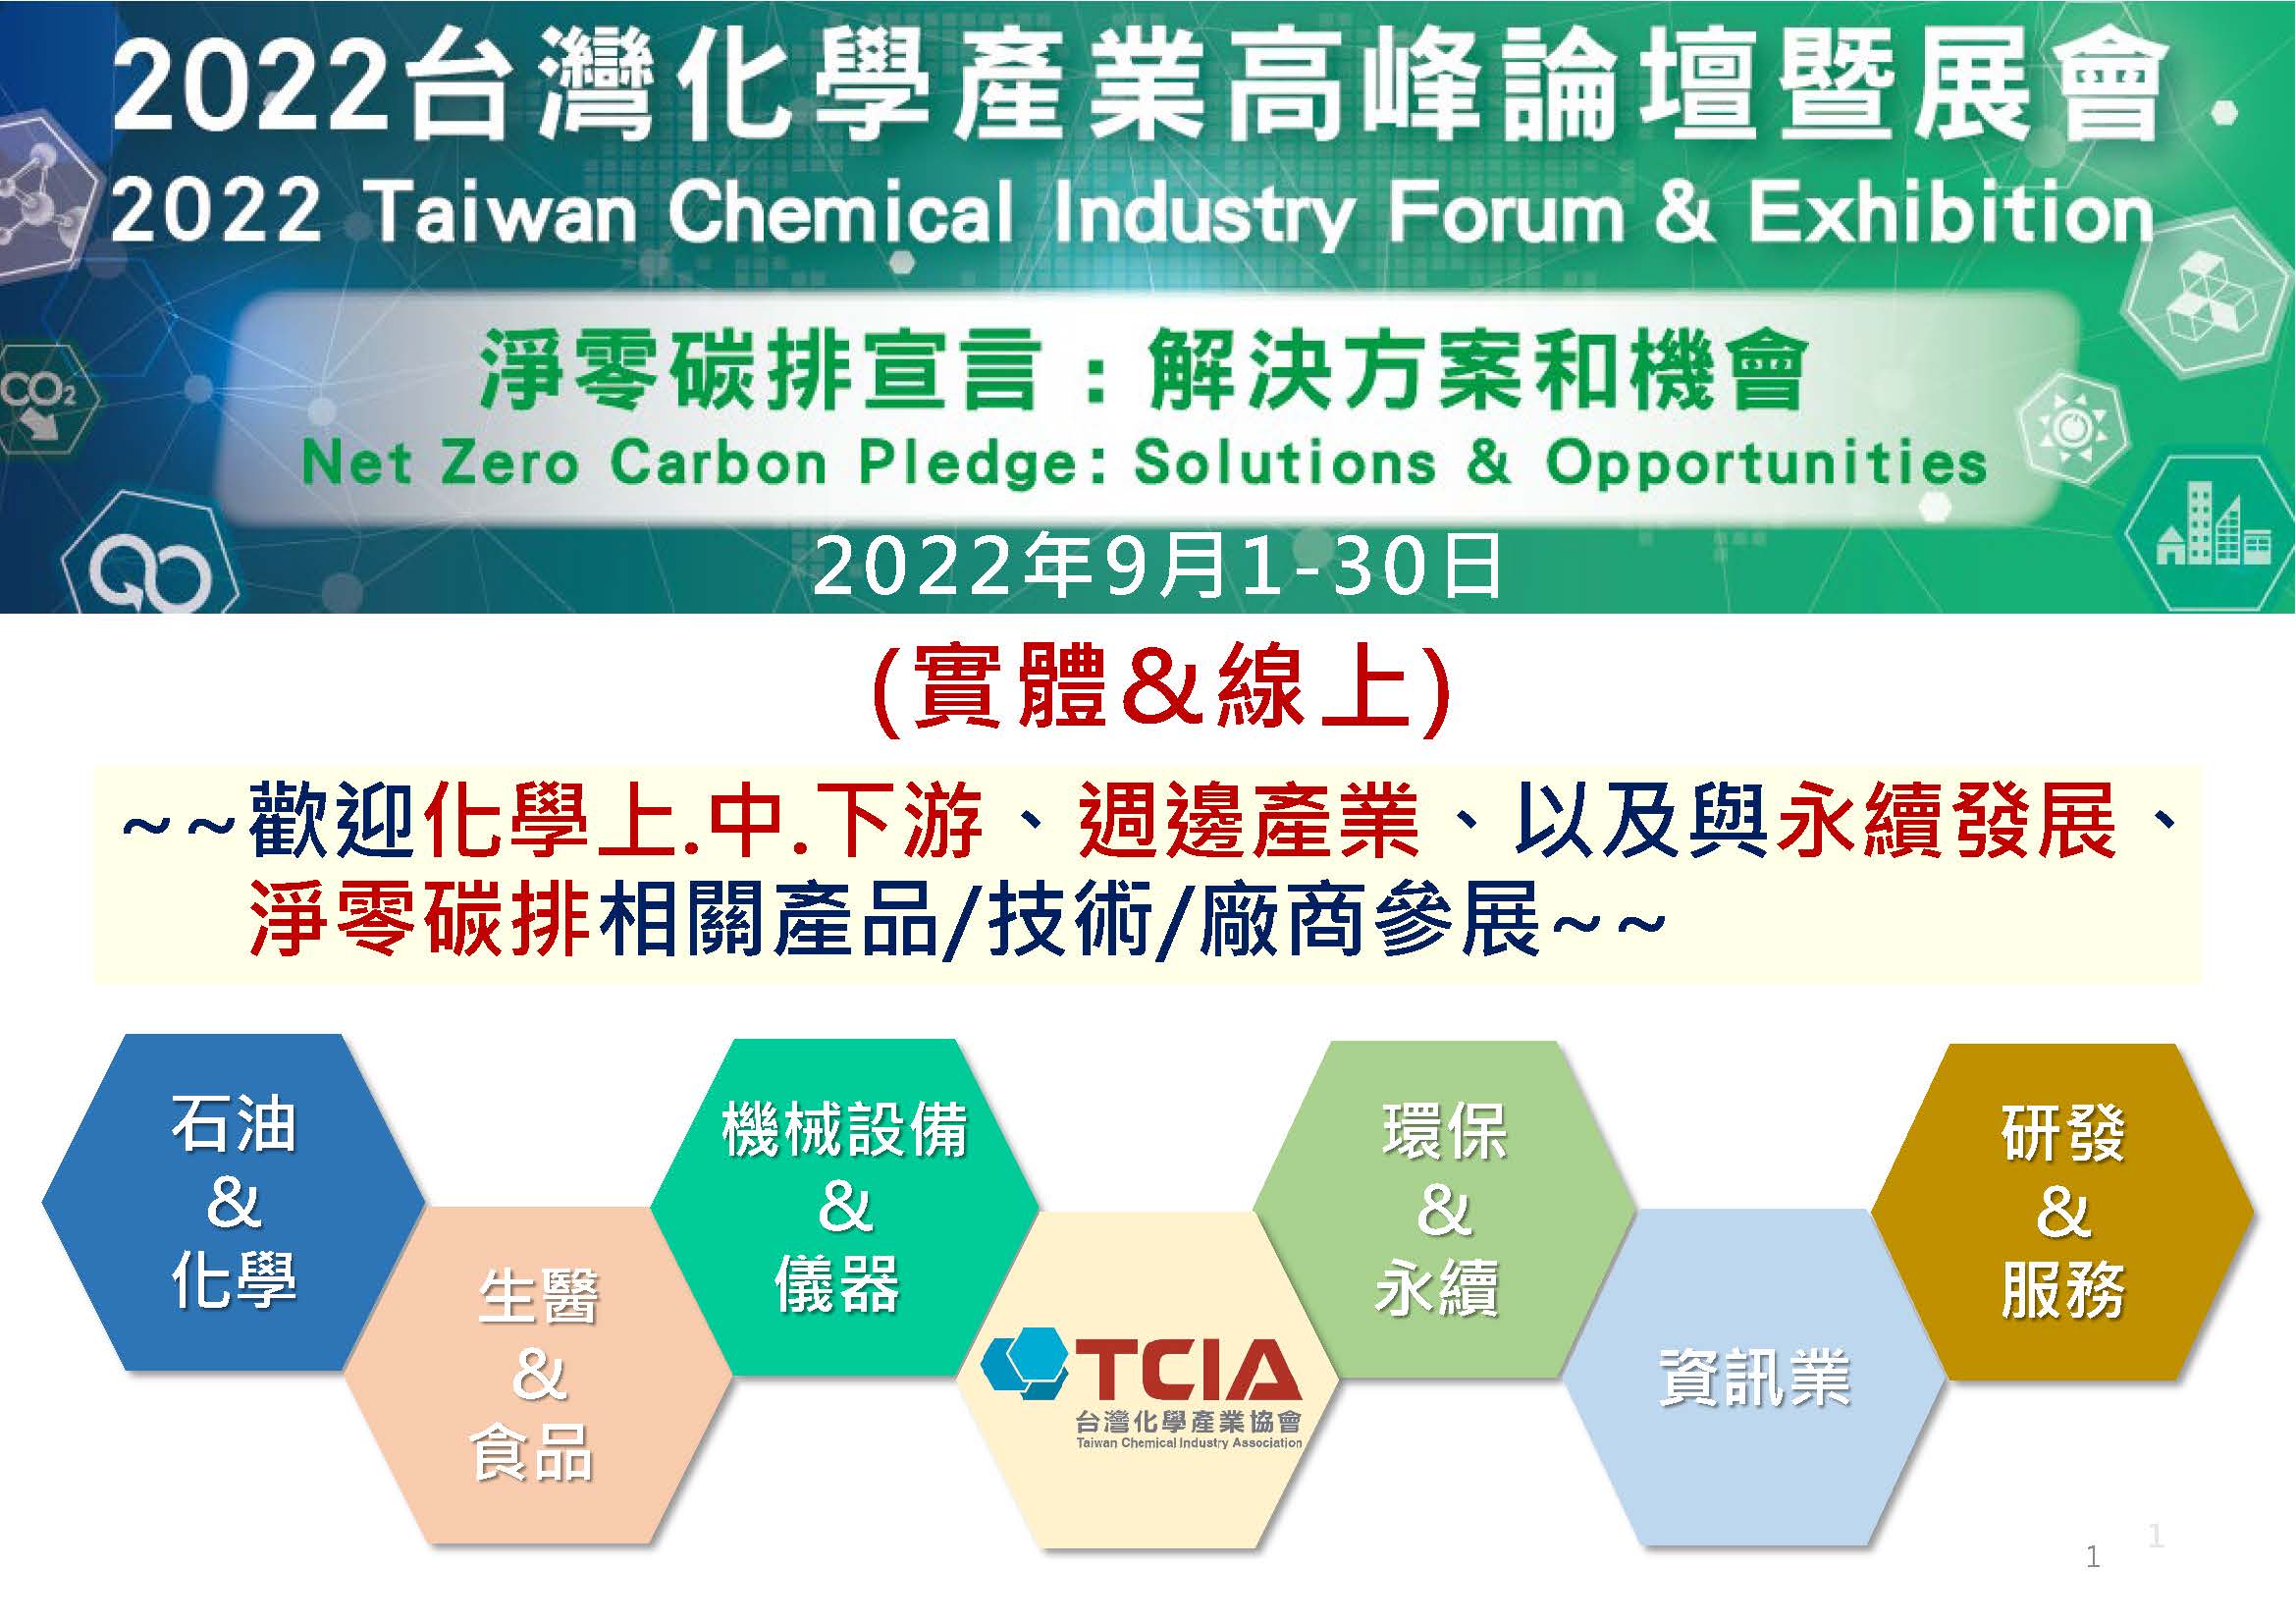 【論壇】2022年台灣化學產業高峰論壇線上論壇暨展會(2022/9/1-9/30)